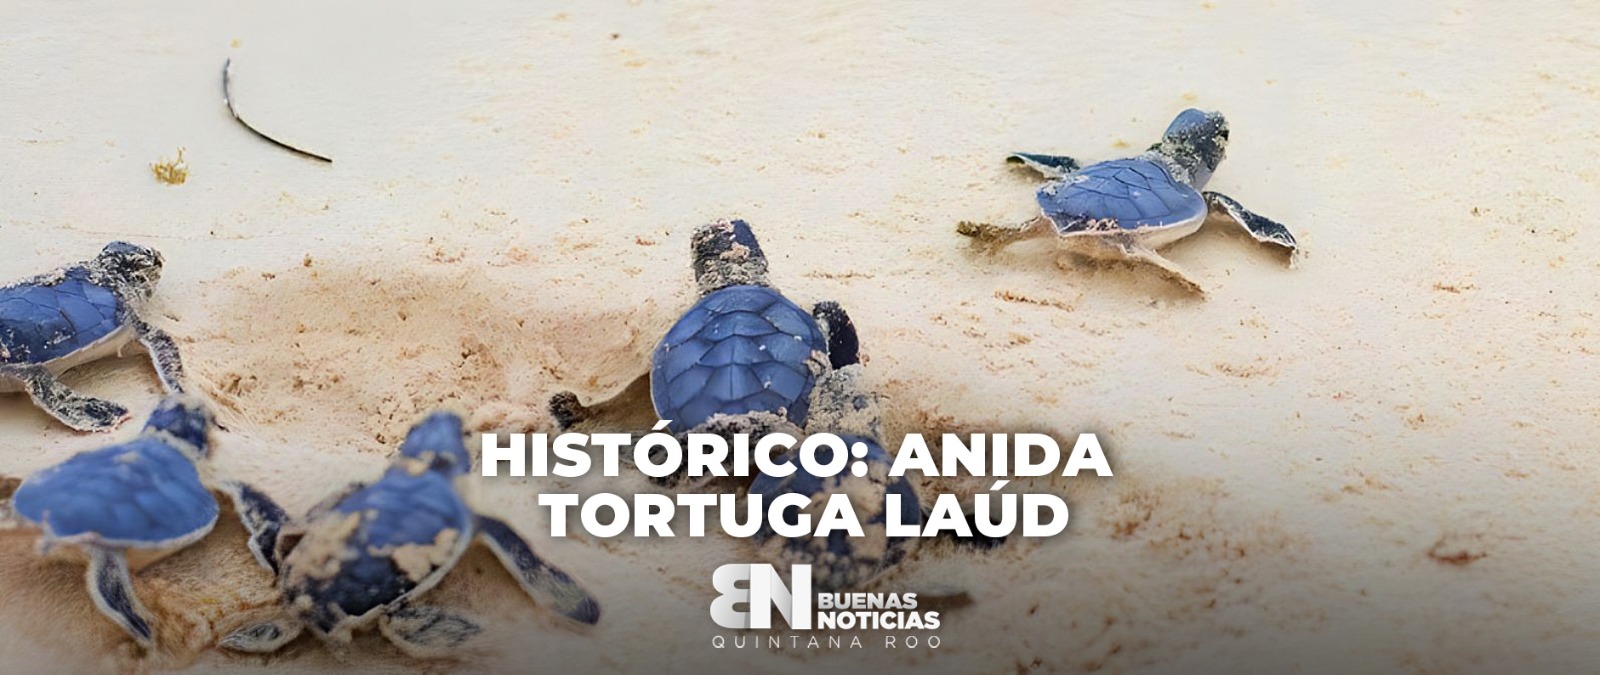 36 años después regresa la tortuga marina más grande del mundo